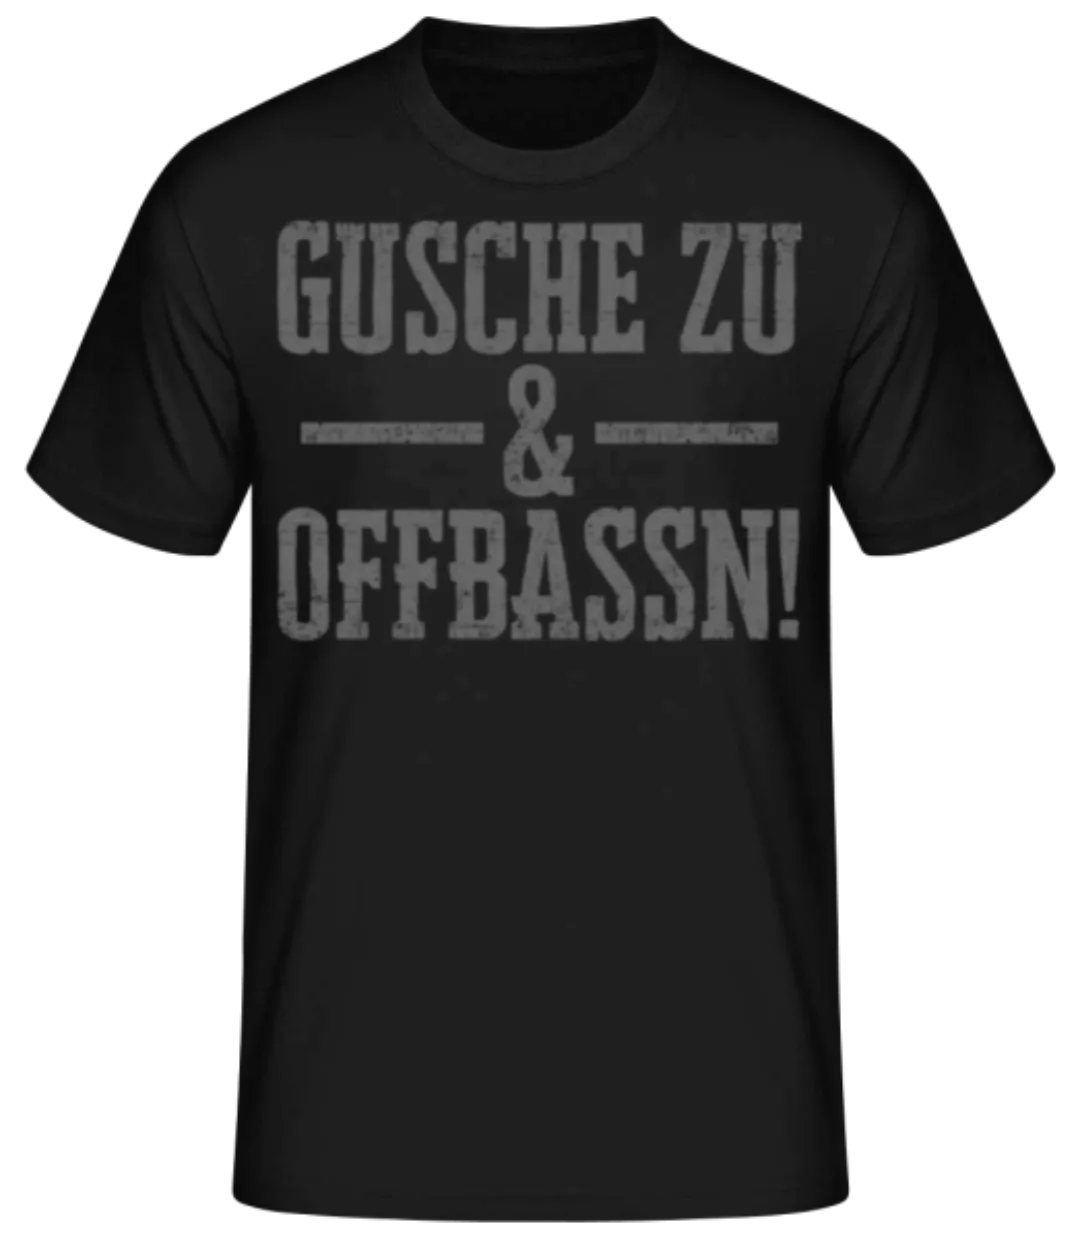 Gusche Zu Und Offbassn · Männer Basic T-Shirt günstig online kaufen